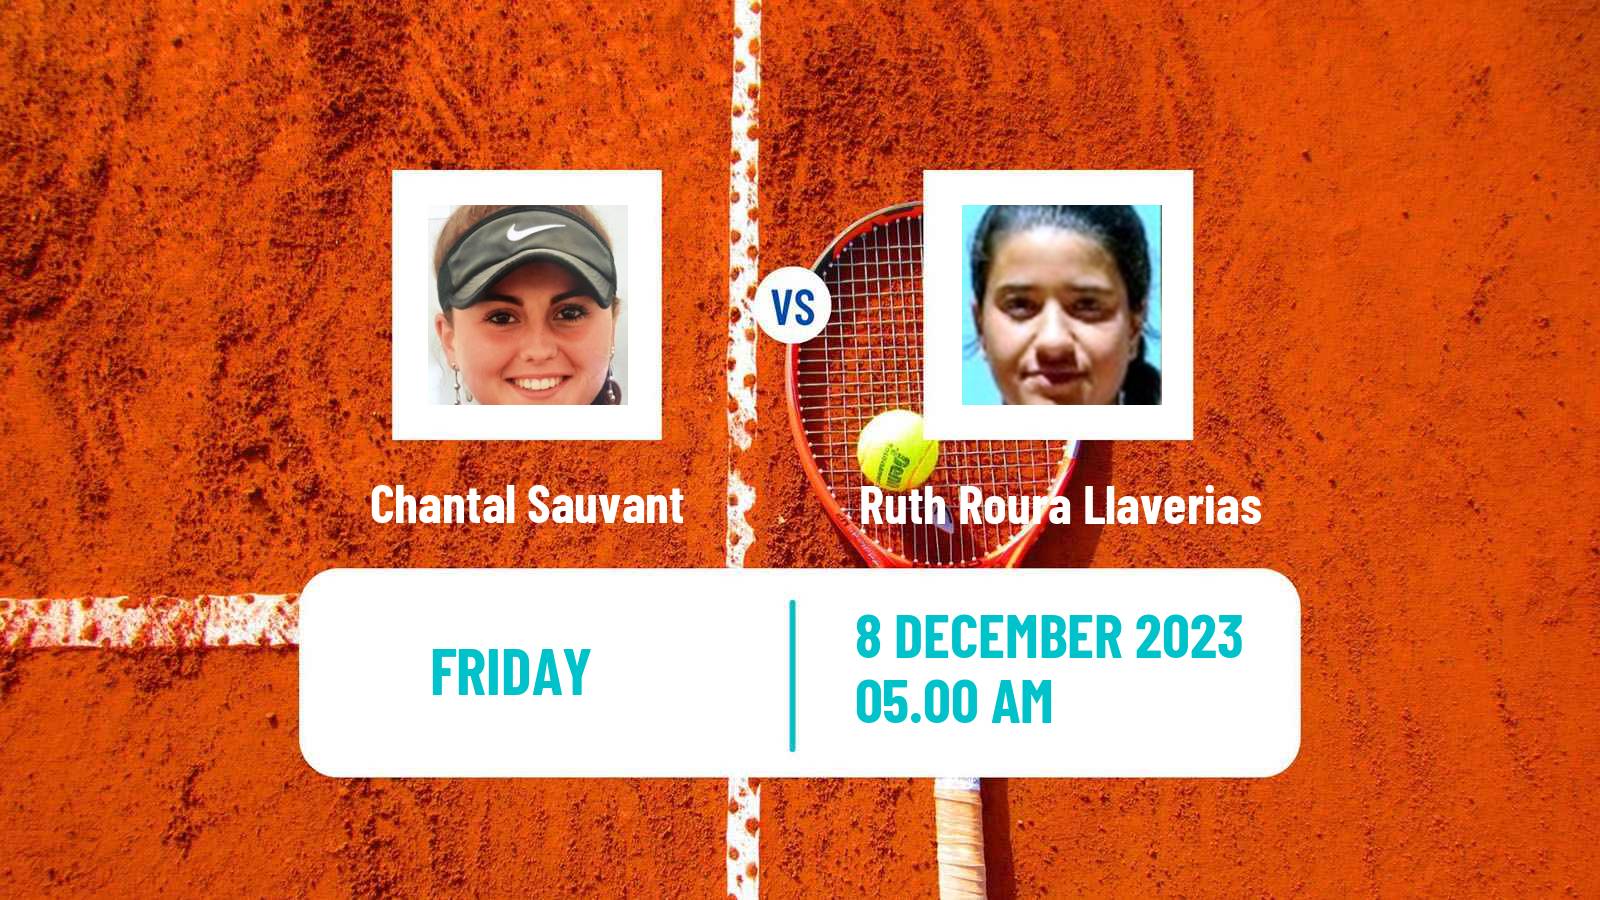 Tennis ITF W15 Valencia 2 Women Chantal Sauvant - Ruth Roura Llaverias